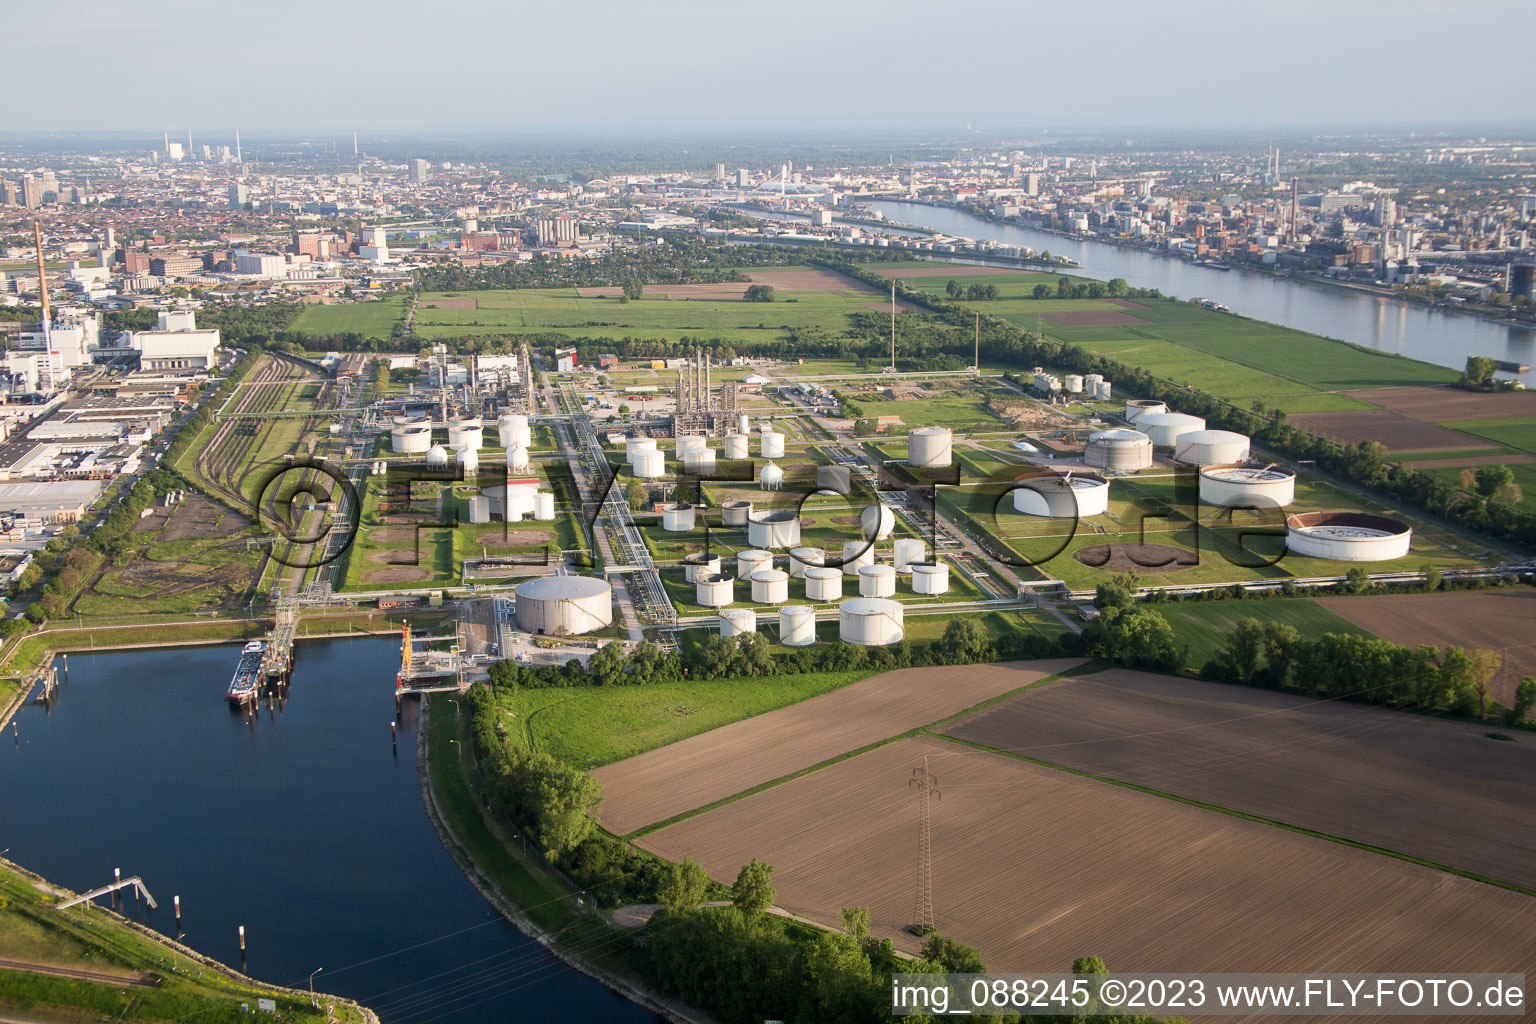 Photographie aérienne de BASF Friesenheim à le quartier Neckarstadt-West in Mannheim dans le département Bade-Wurtemberg, Allemagne